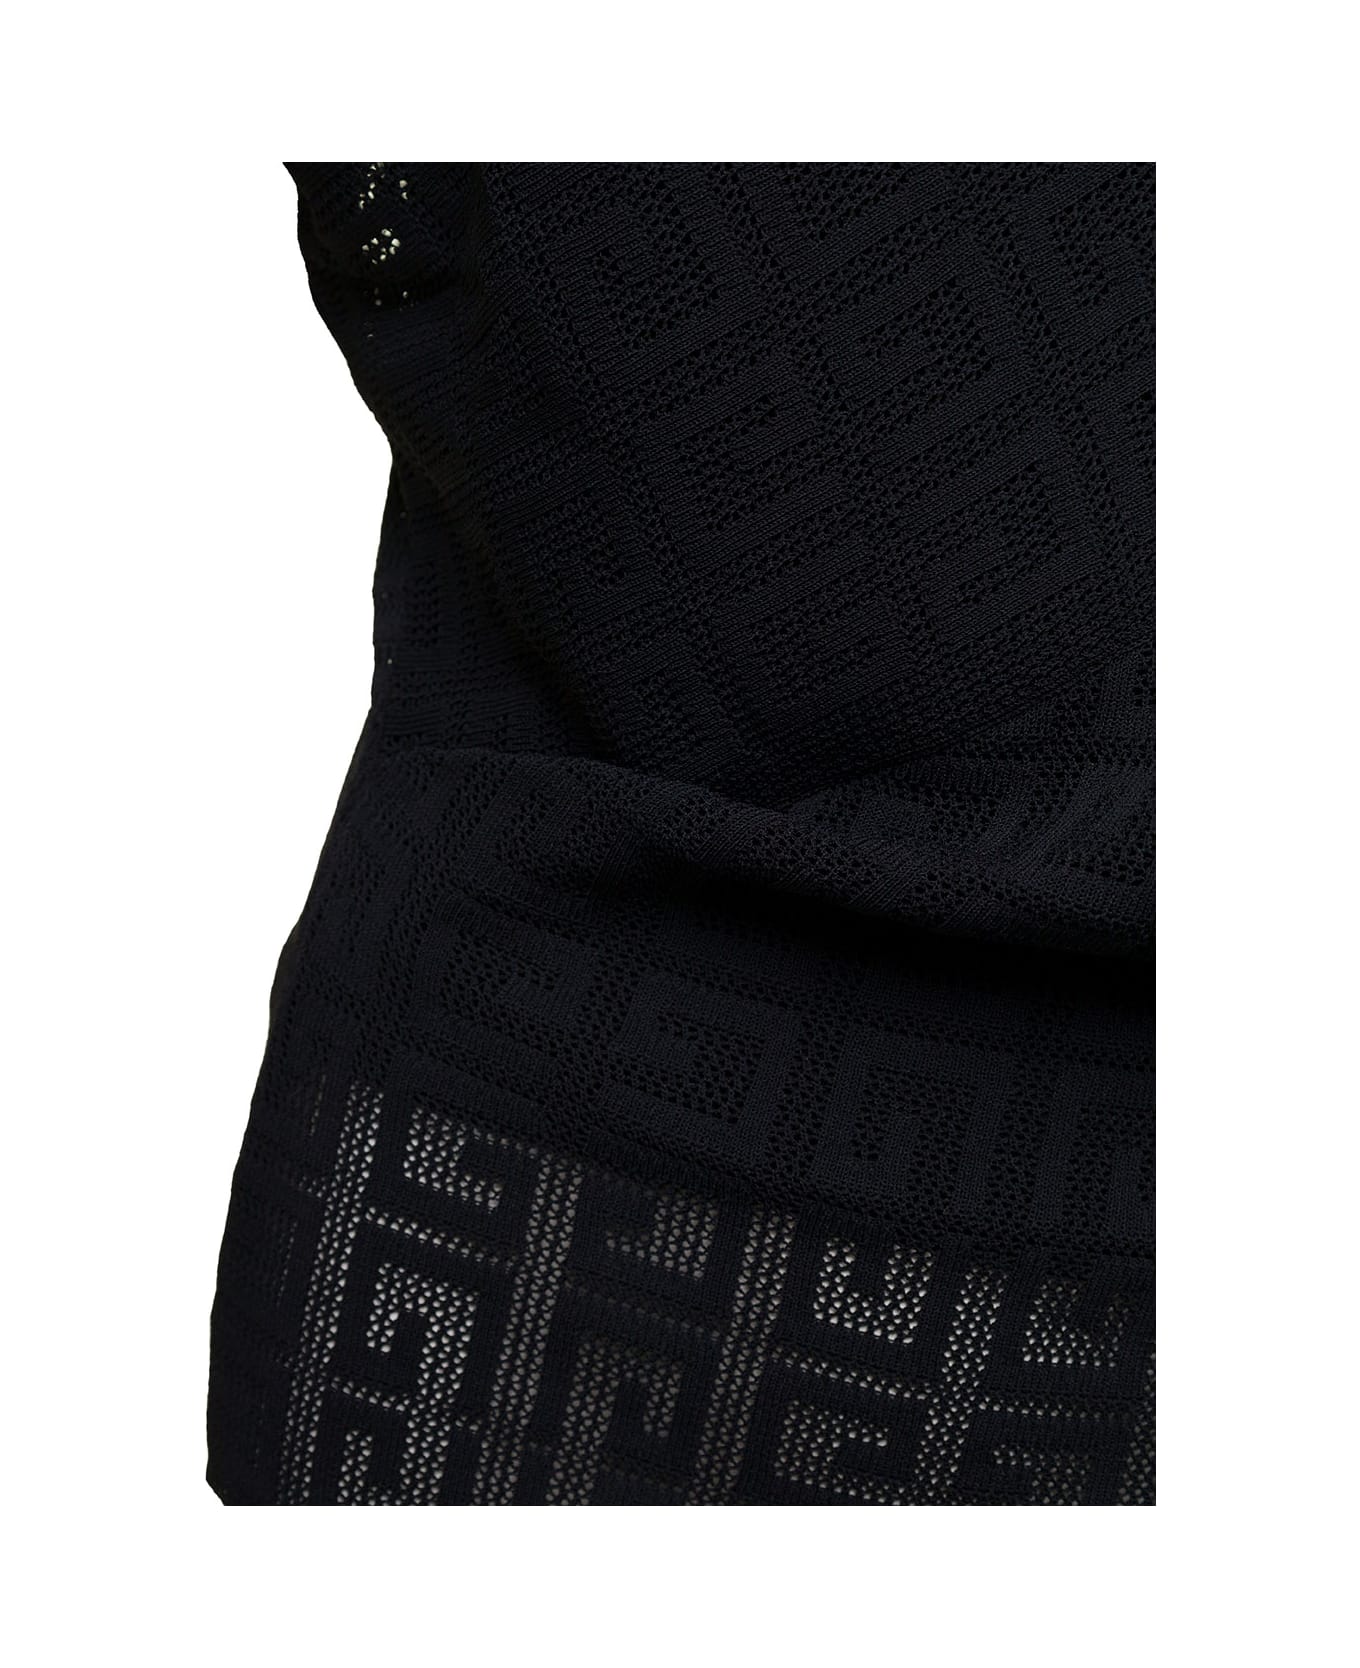 Givenchy Draped Short Sleeves Top - Black